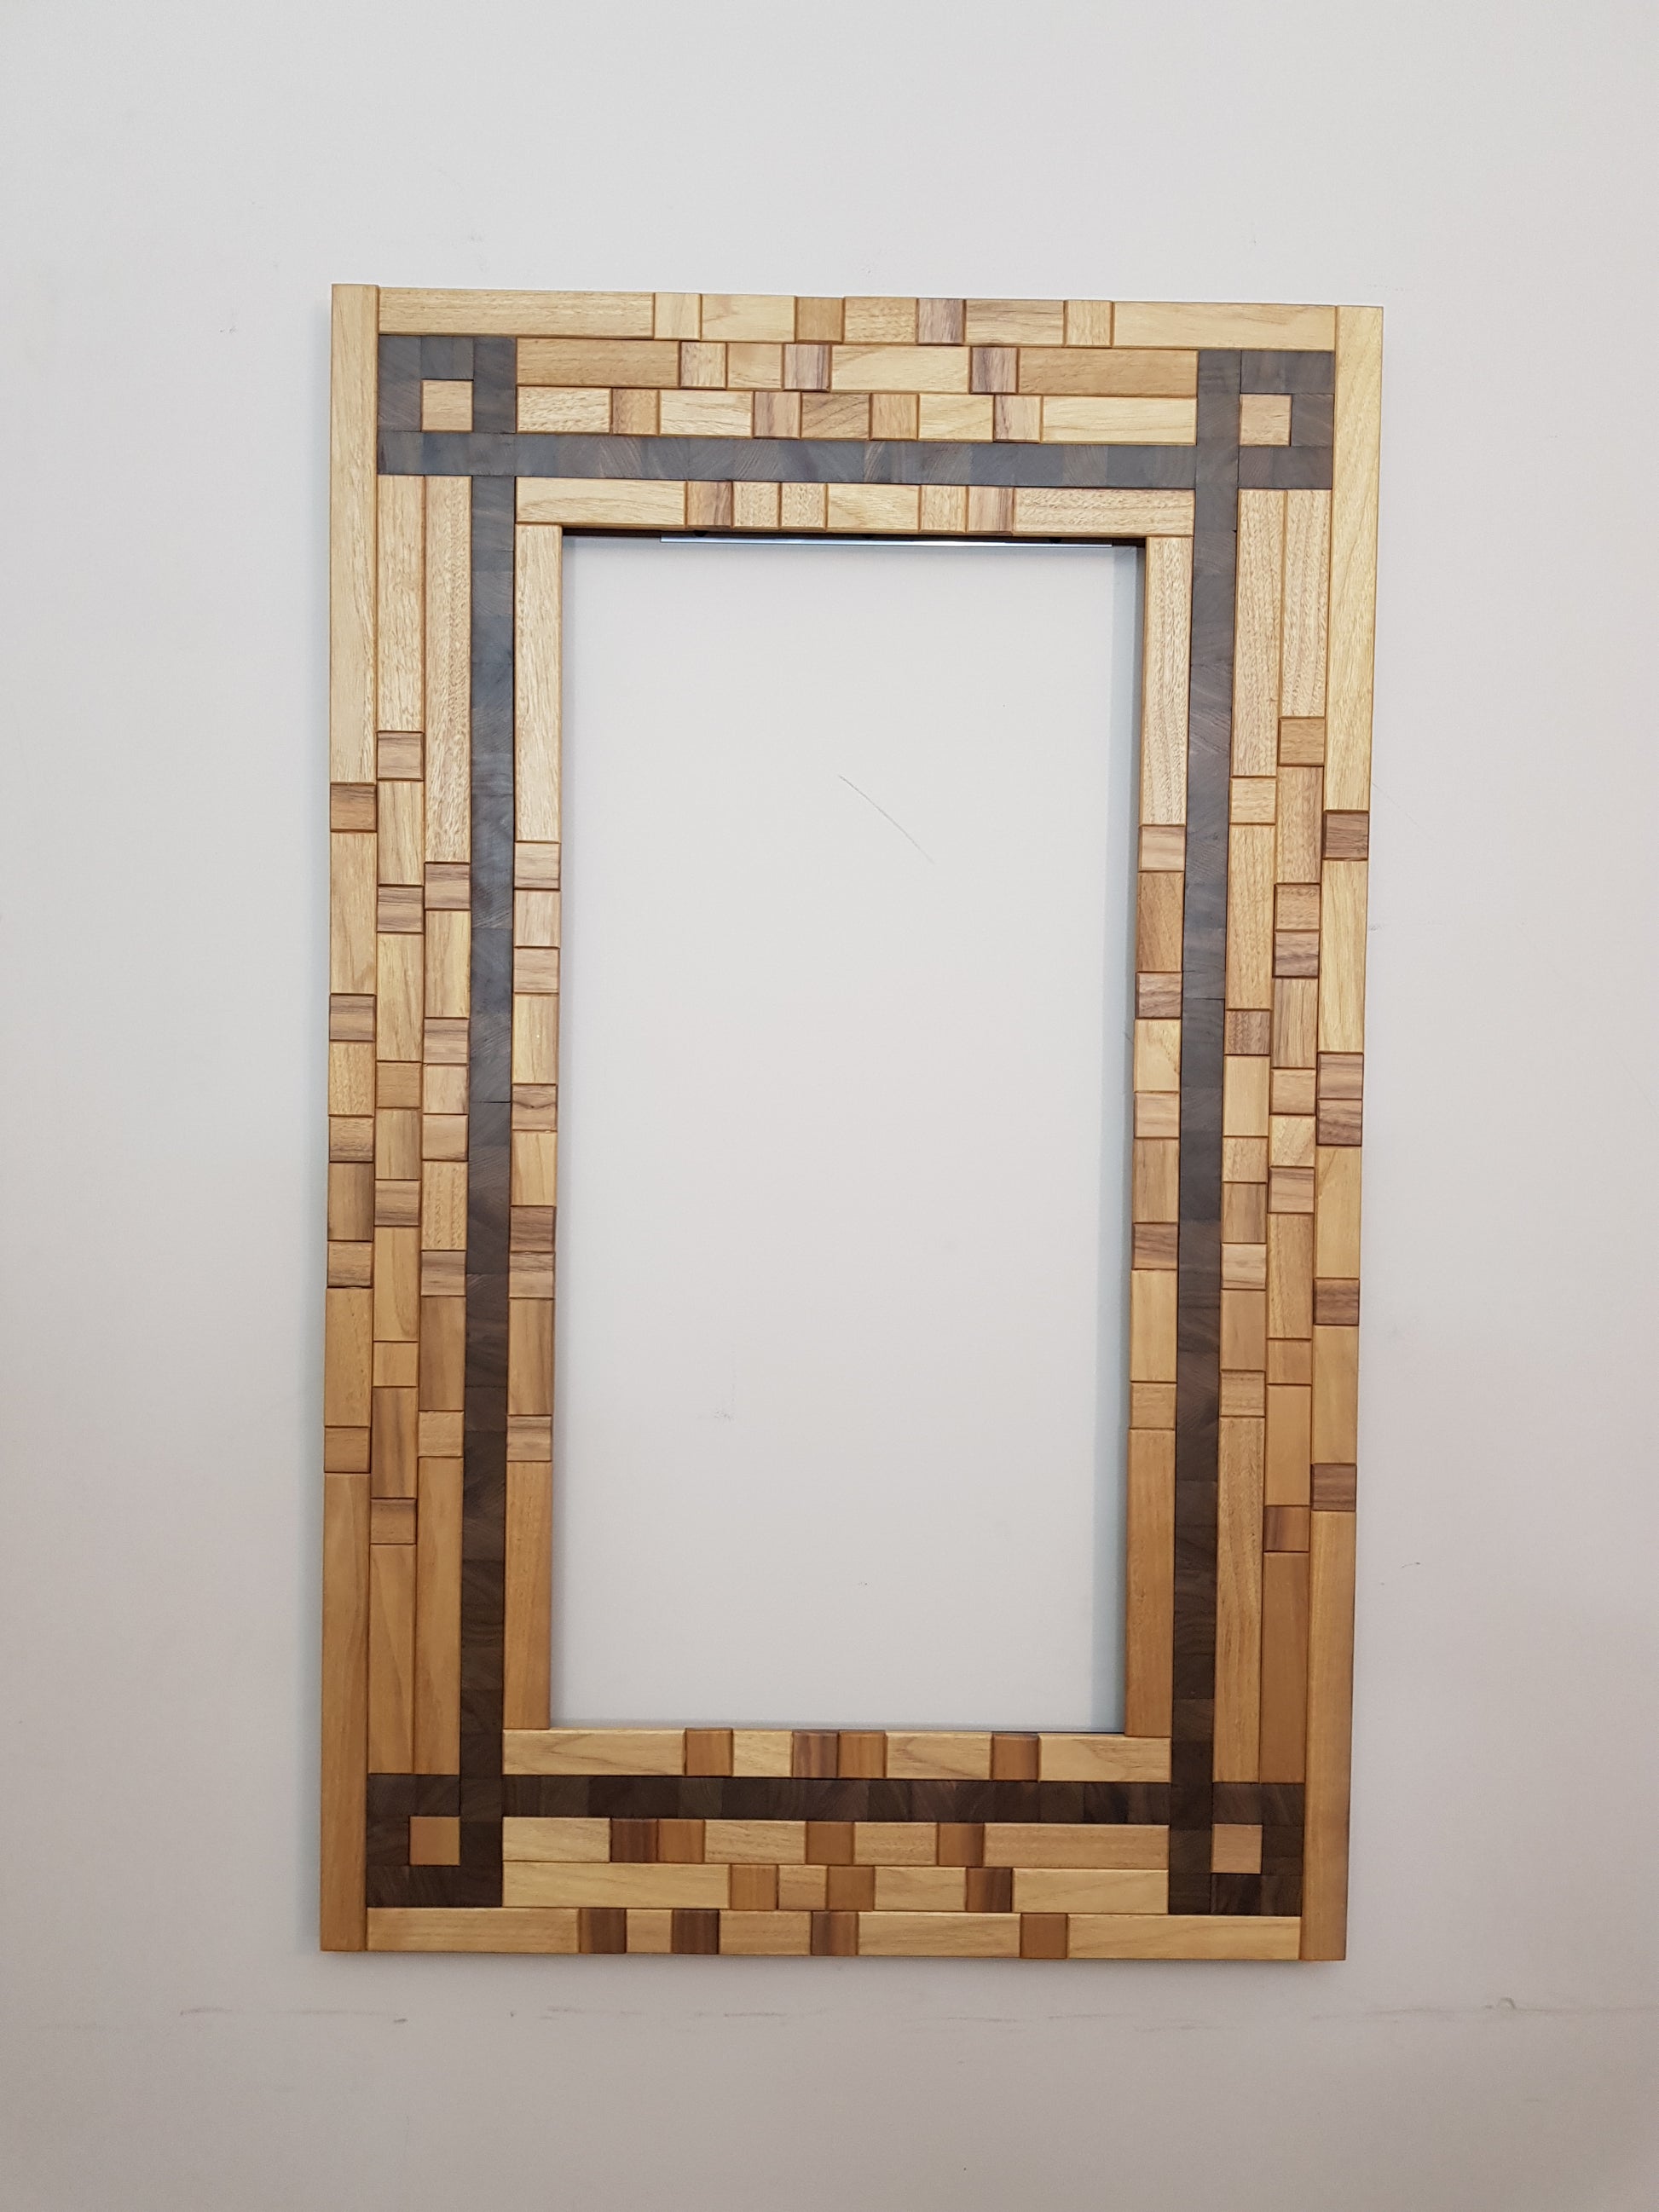 Large centrepiece statement mirror in walnut, picture frame artwork